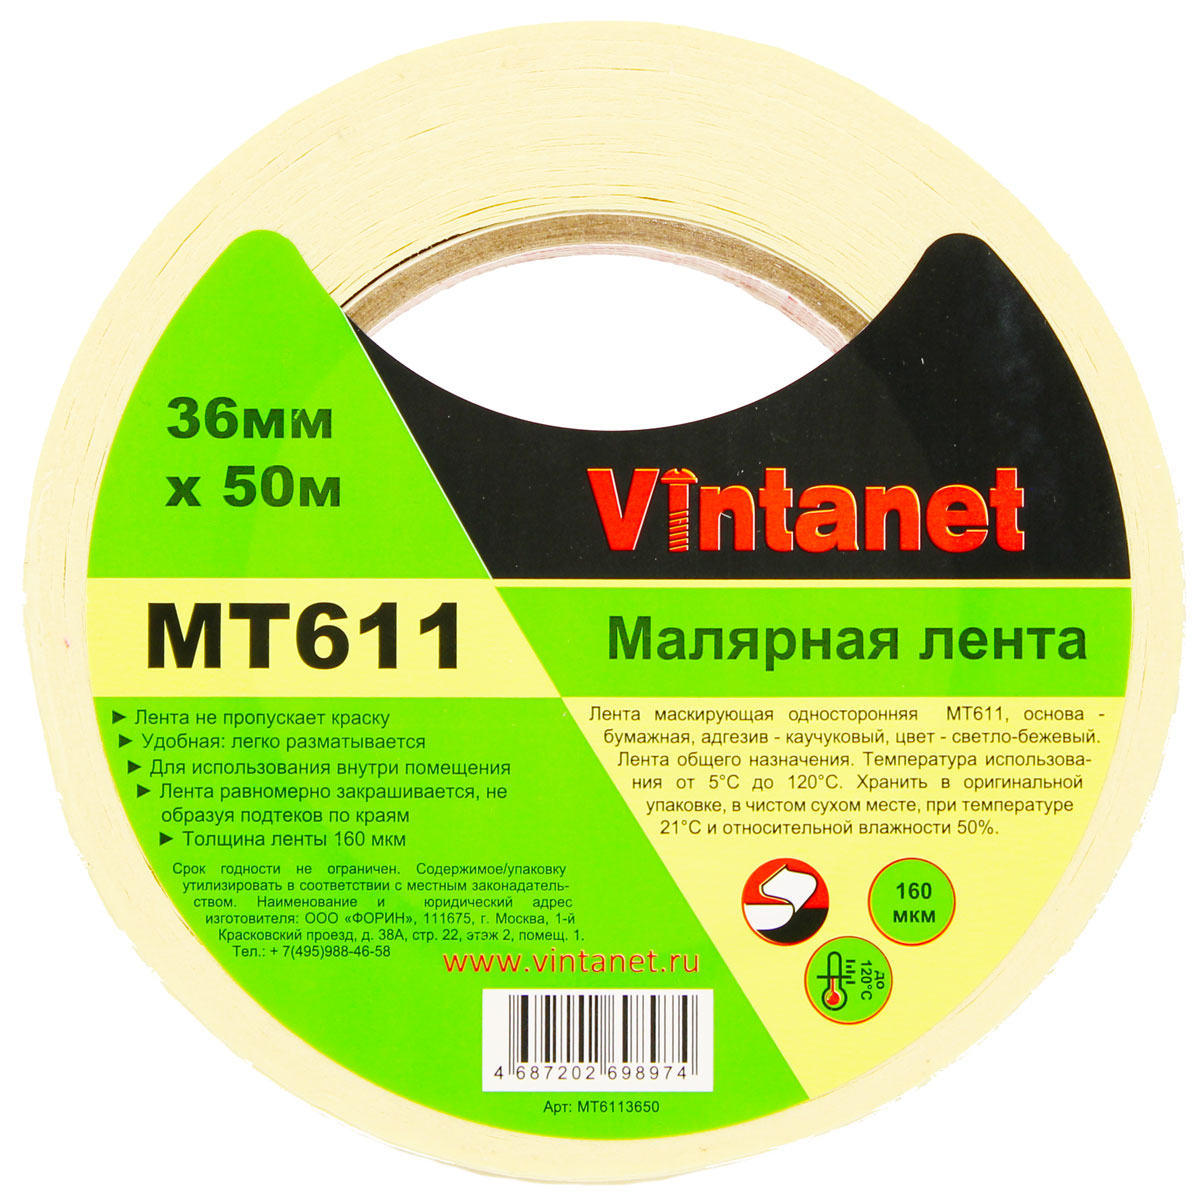 Лента малярная высокотемпературная Vintanet MT611, 120 С, 160 мкм, 36мм х 50м, MT6113650 малярная лента arch